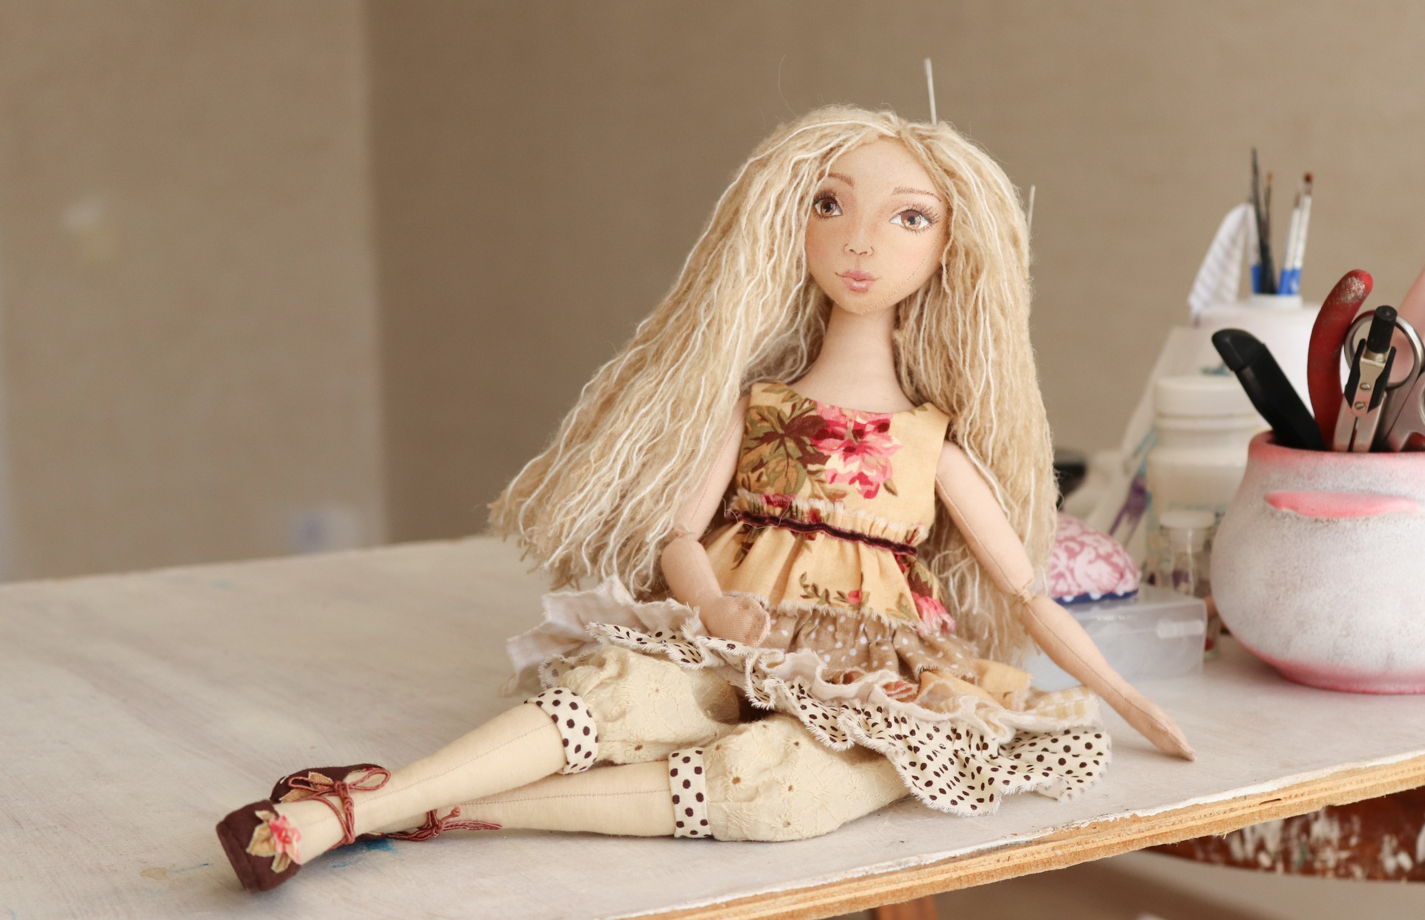 Этель, 30 см. Заготовка интерьерной куклы из текстиля для хобби, творчества, рукоделия